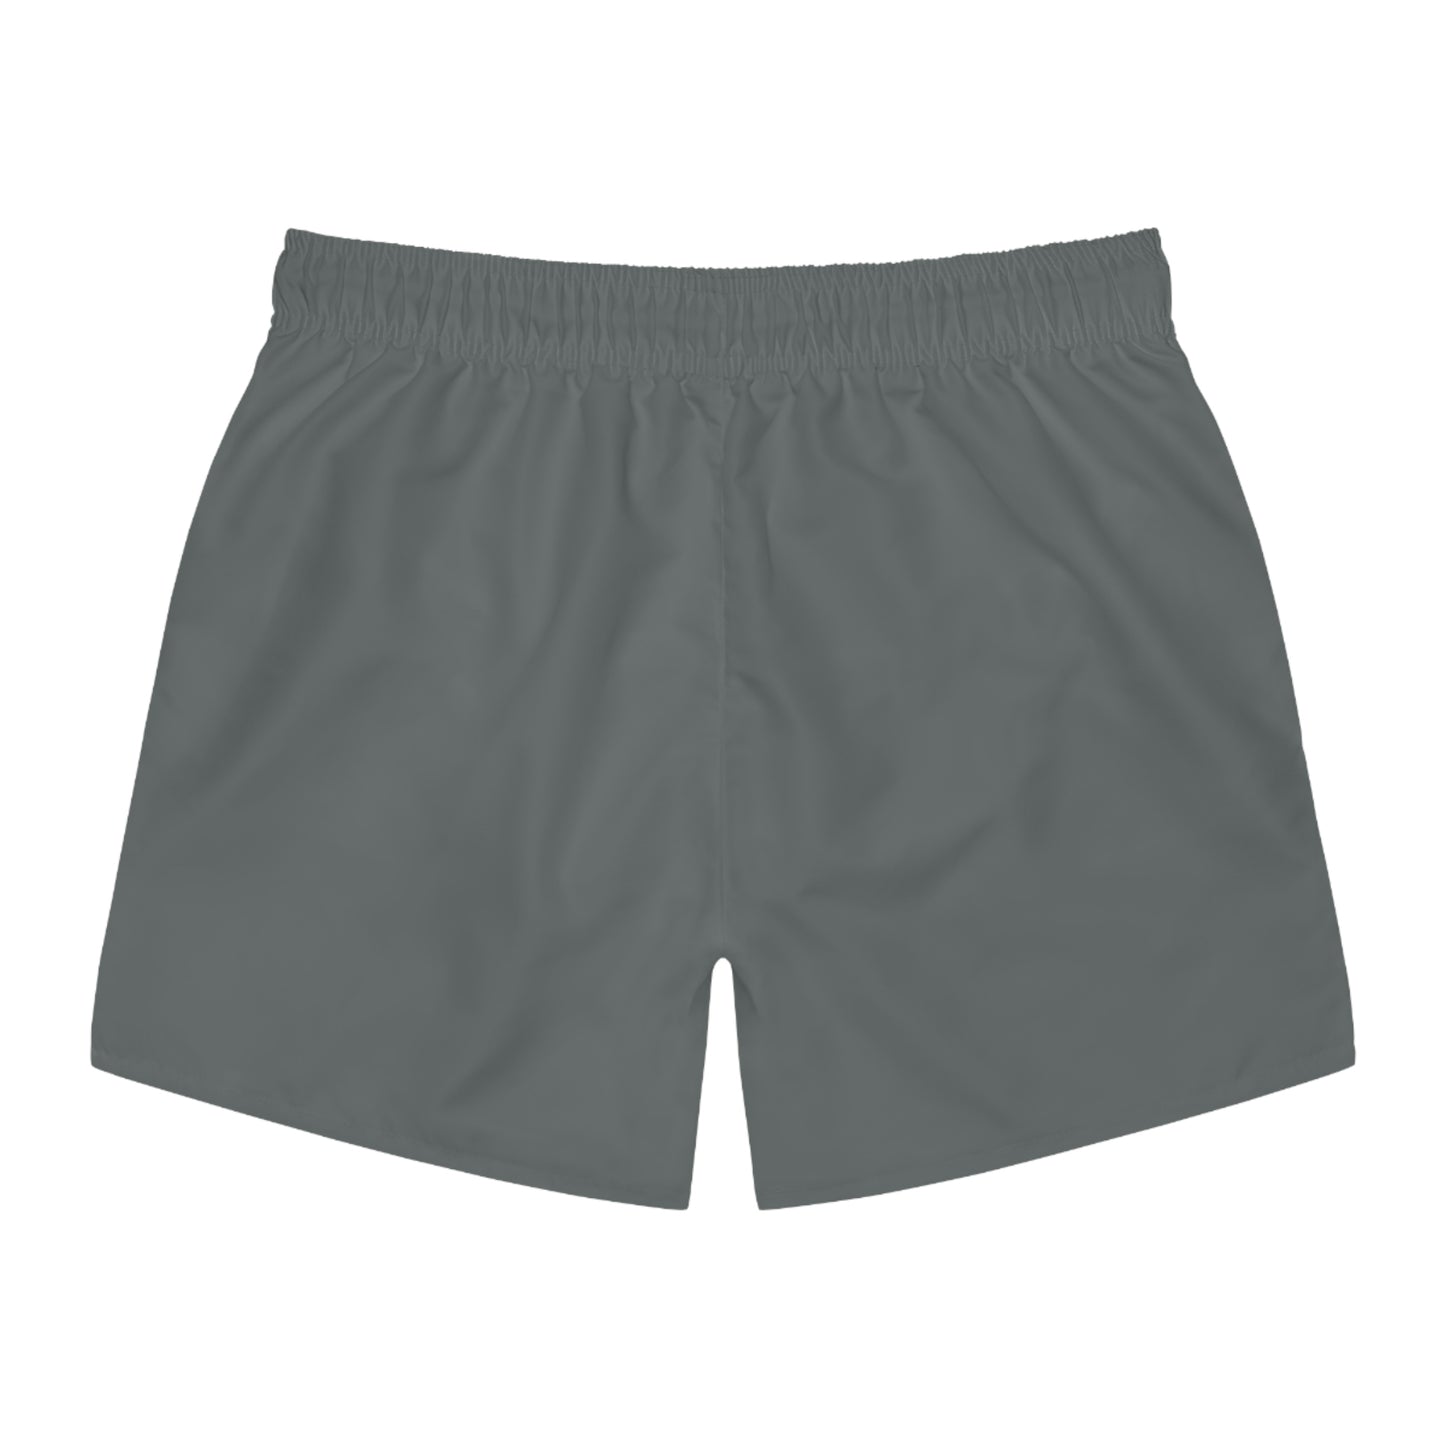 FTF Shorts Grey/Grey